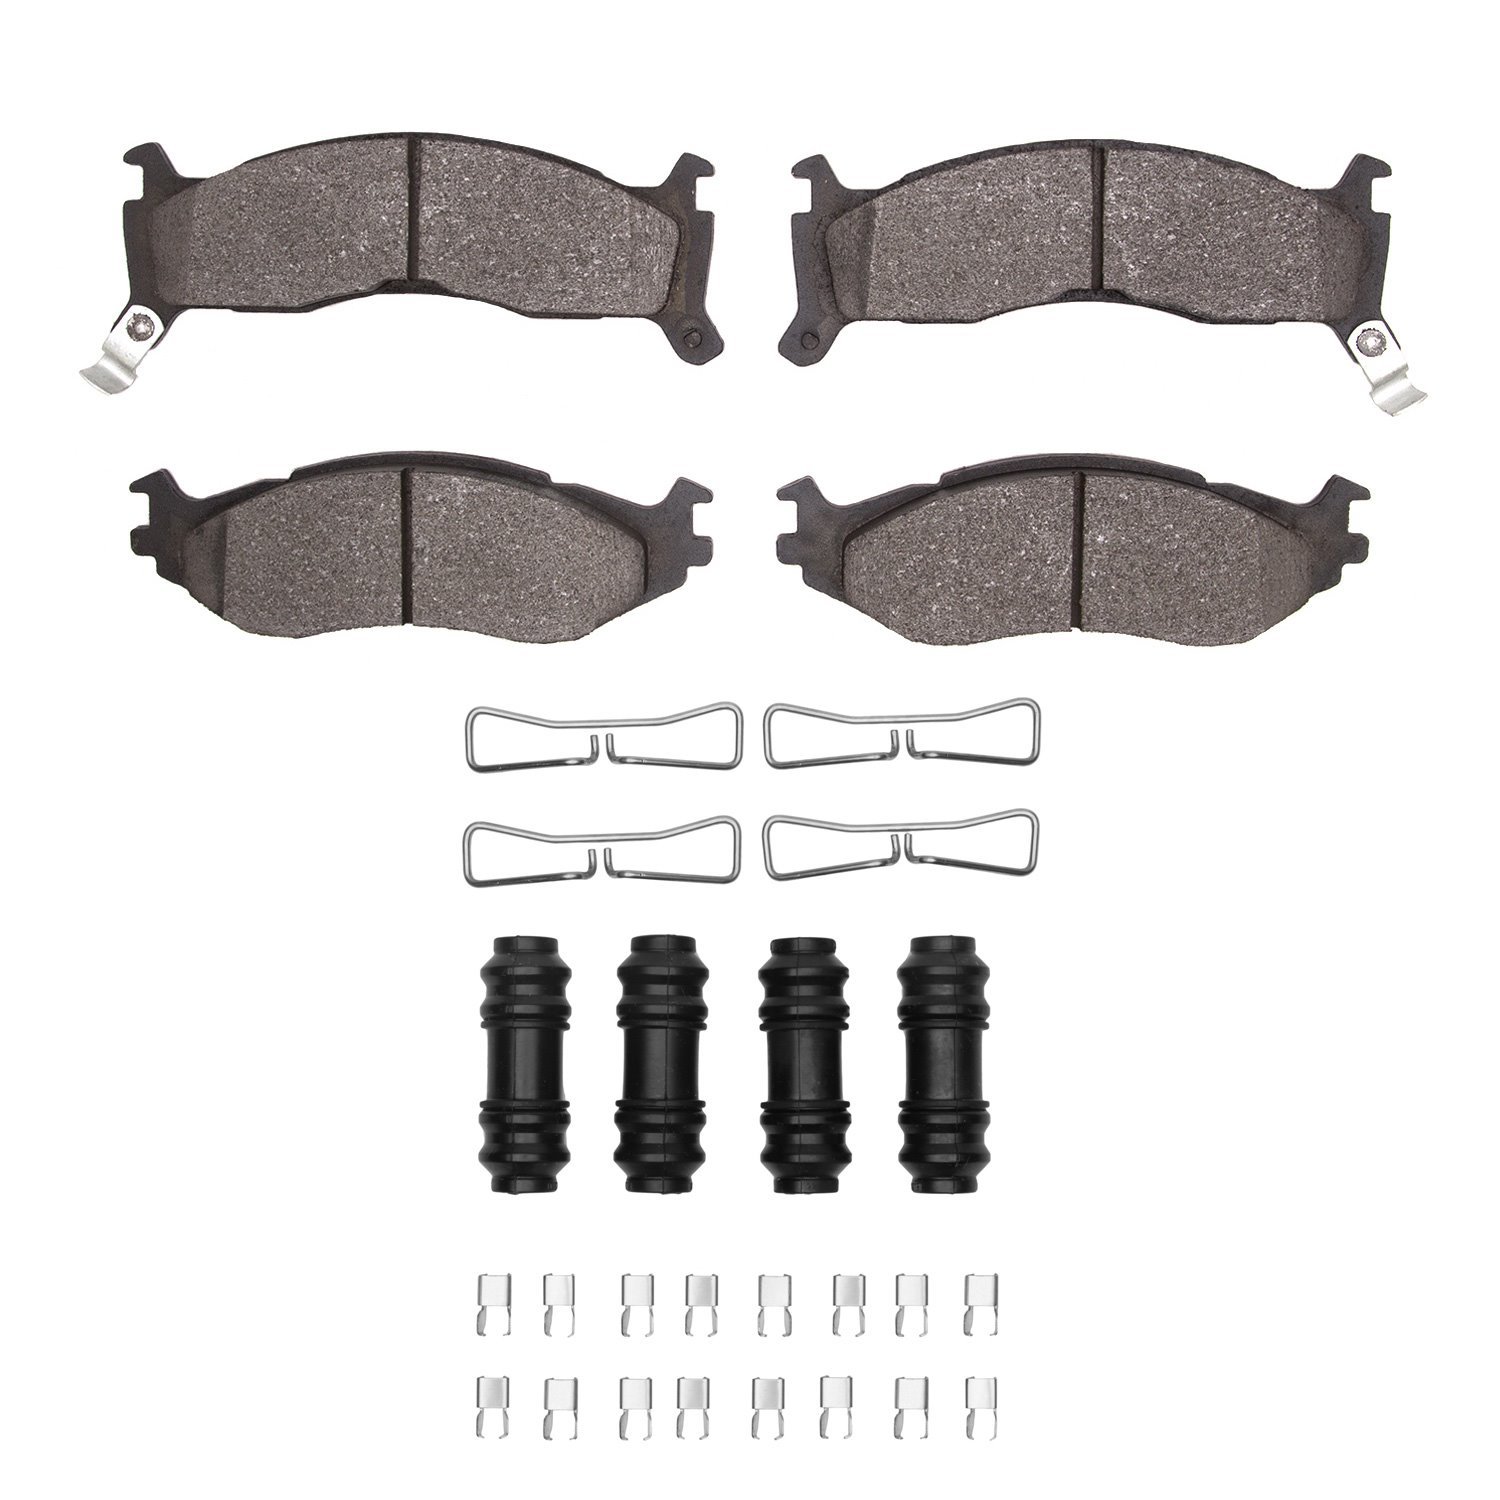 1311-0524-01 3000-Series Semi-Metallic Brake Pads & Hardware Kit, 1991-1995 Mopar, Position: Front